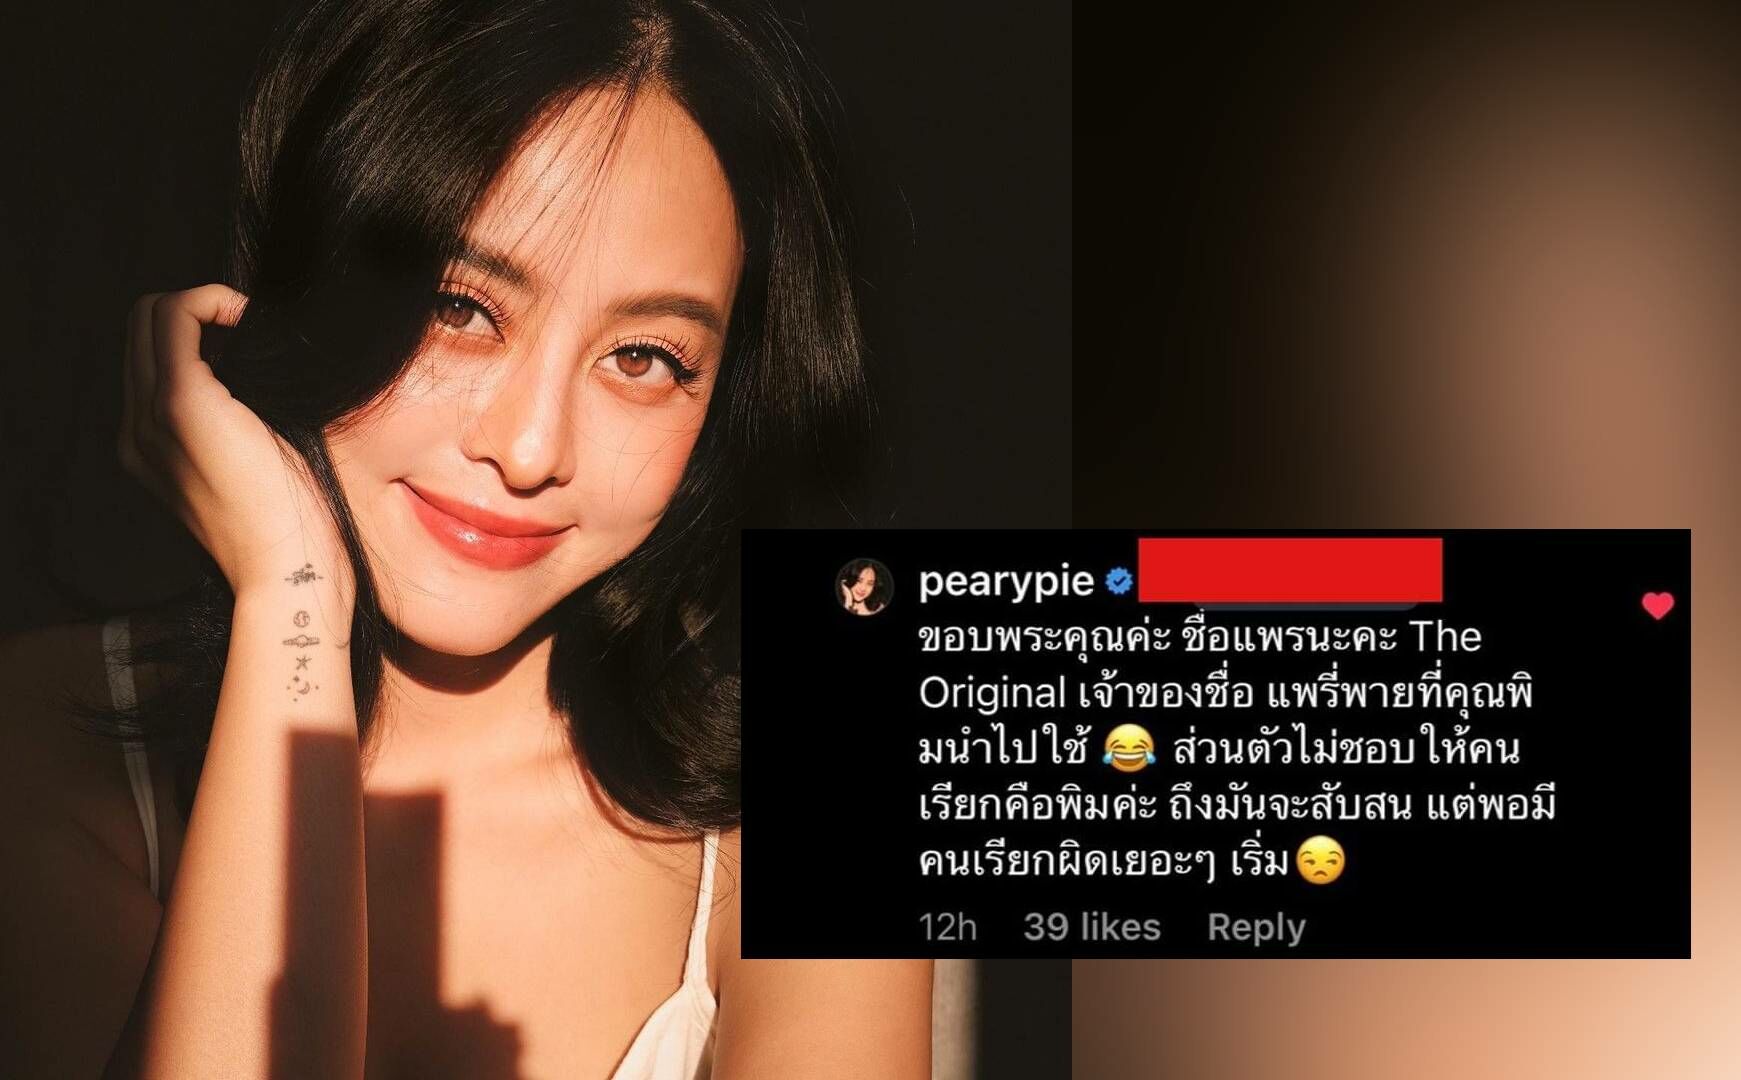 แพรี่พาย ตอบเจ็บ หลังถูกทักผิดเป็น คุณพิม เจ้าของชื่อที่ถูกนำไปใช้ไม่ชอบ Thaiger ข่าวไทย 4020